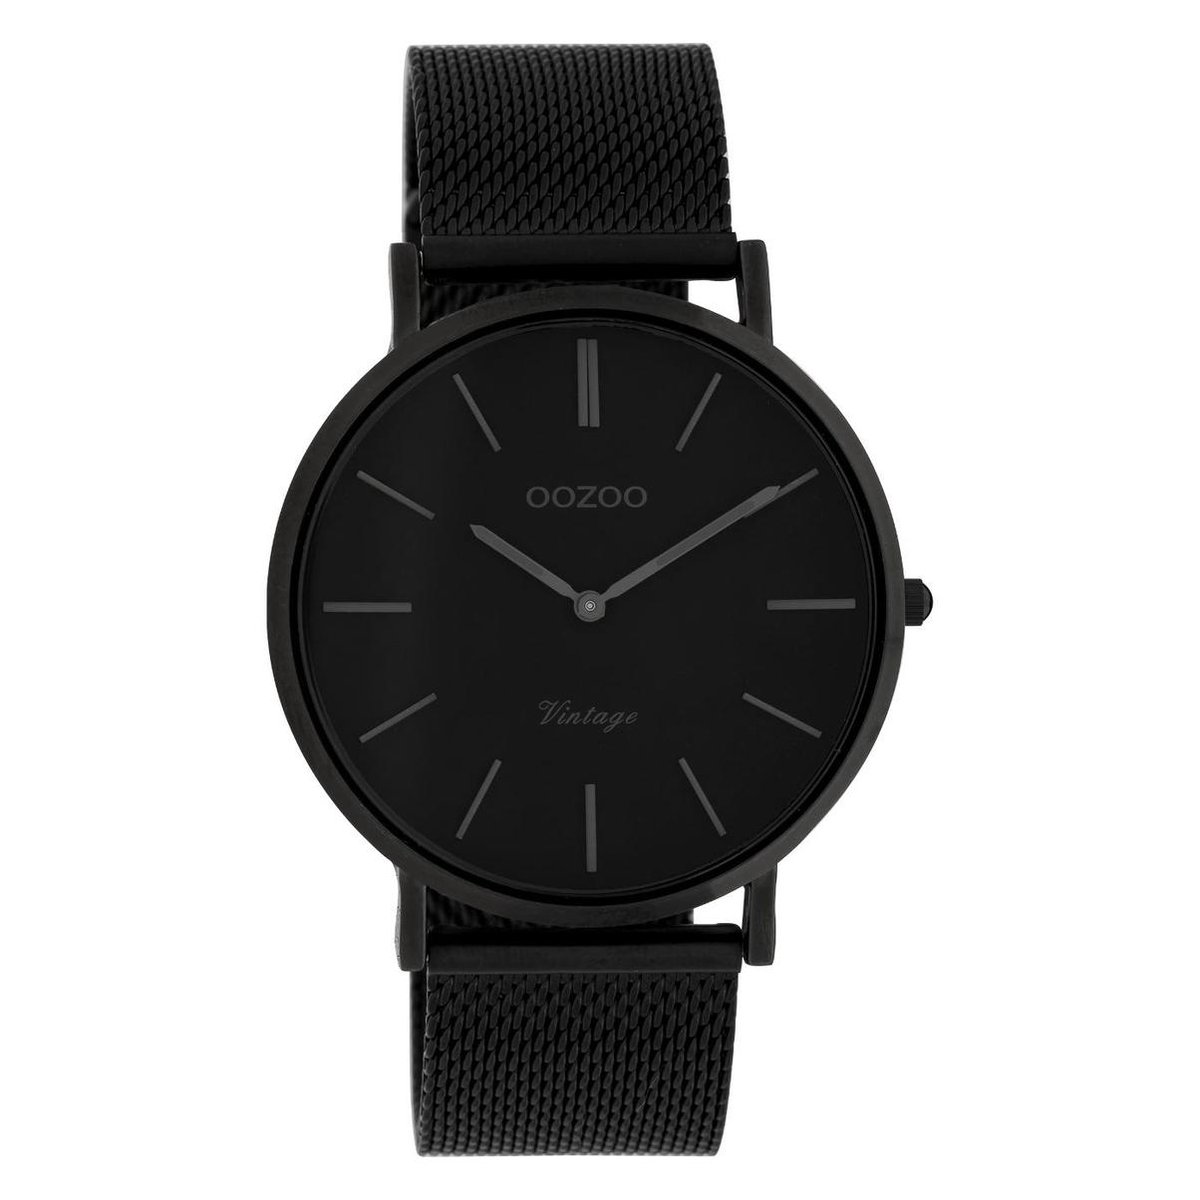 OOZOO Vintage series - Zwarte horloge met zwarte metalen mesh armband - C9933 - Ø40